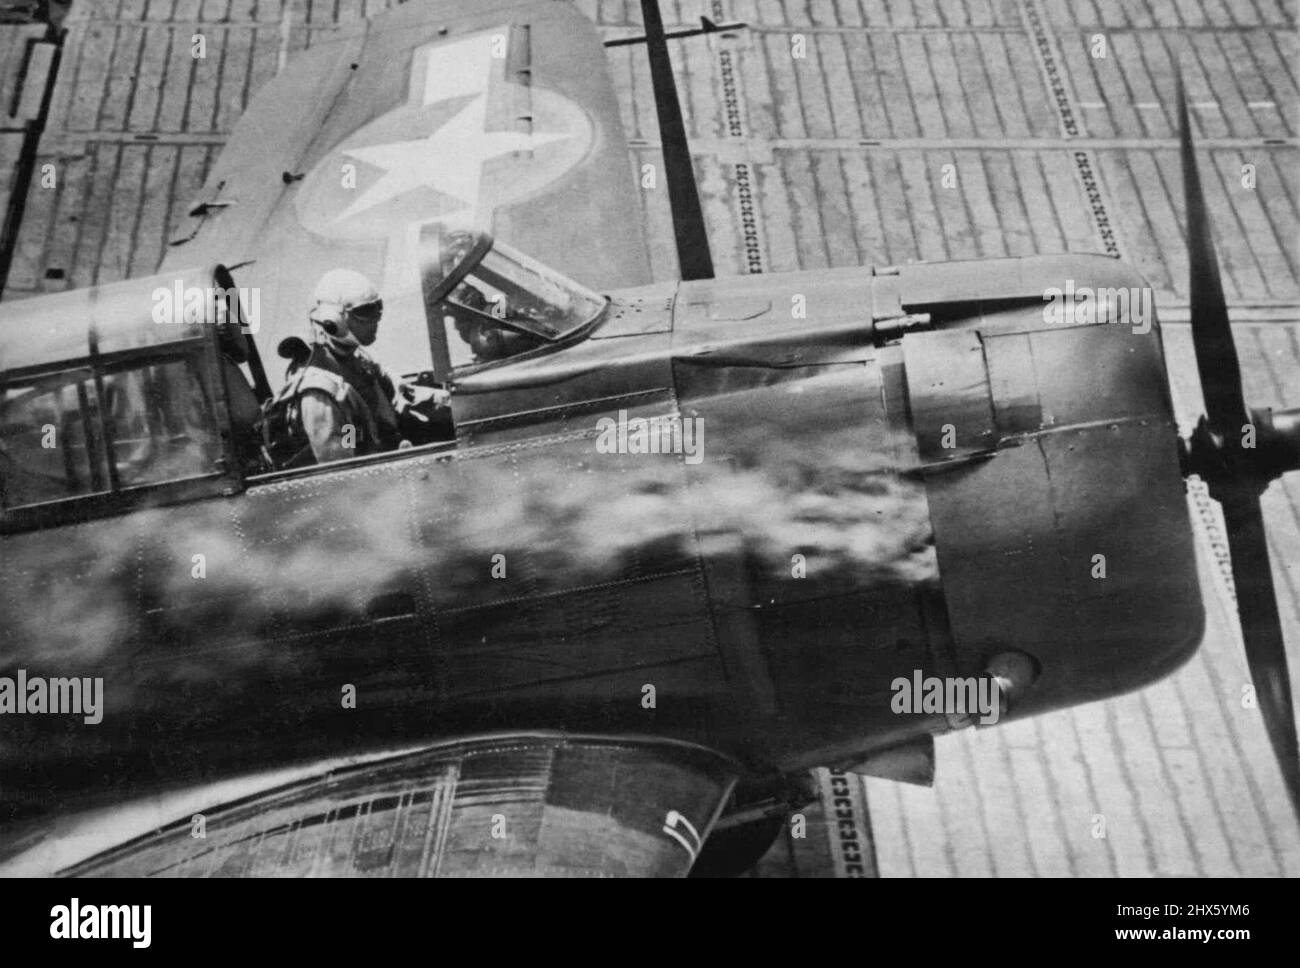 Engine Afire, U.S. plane recherches sécurité -- l'une des grandes forces de l'avion américain de base de transporteur qui a frappé la base de Jap New Britain de Rabaul novembre 11 atterrit sur le pont d'un transporteur avec son moteur en fureur d'un coup de Jap. 26 novembre 1943. (Photo par photo de presse associée). ;Engine Afire, U.S. plane recherches sécurité -- l'une des grandes forces de l'avion américain de base de transporteur qui a frappé la base de Jap New Britain de Rabaul novembre 11 atterrit sur un pont de transporteur avec son moteur en fureur d'un coup de Jap. Banque D'Images